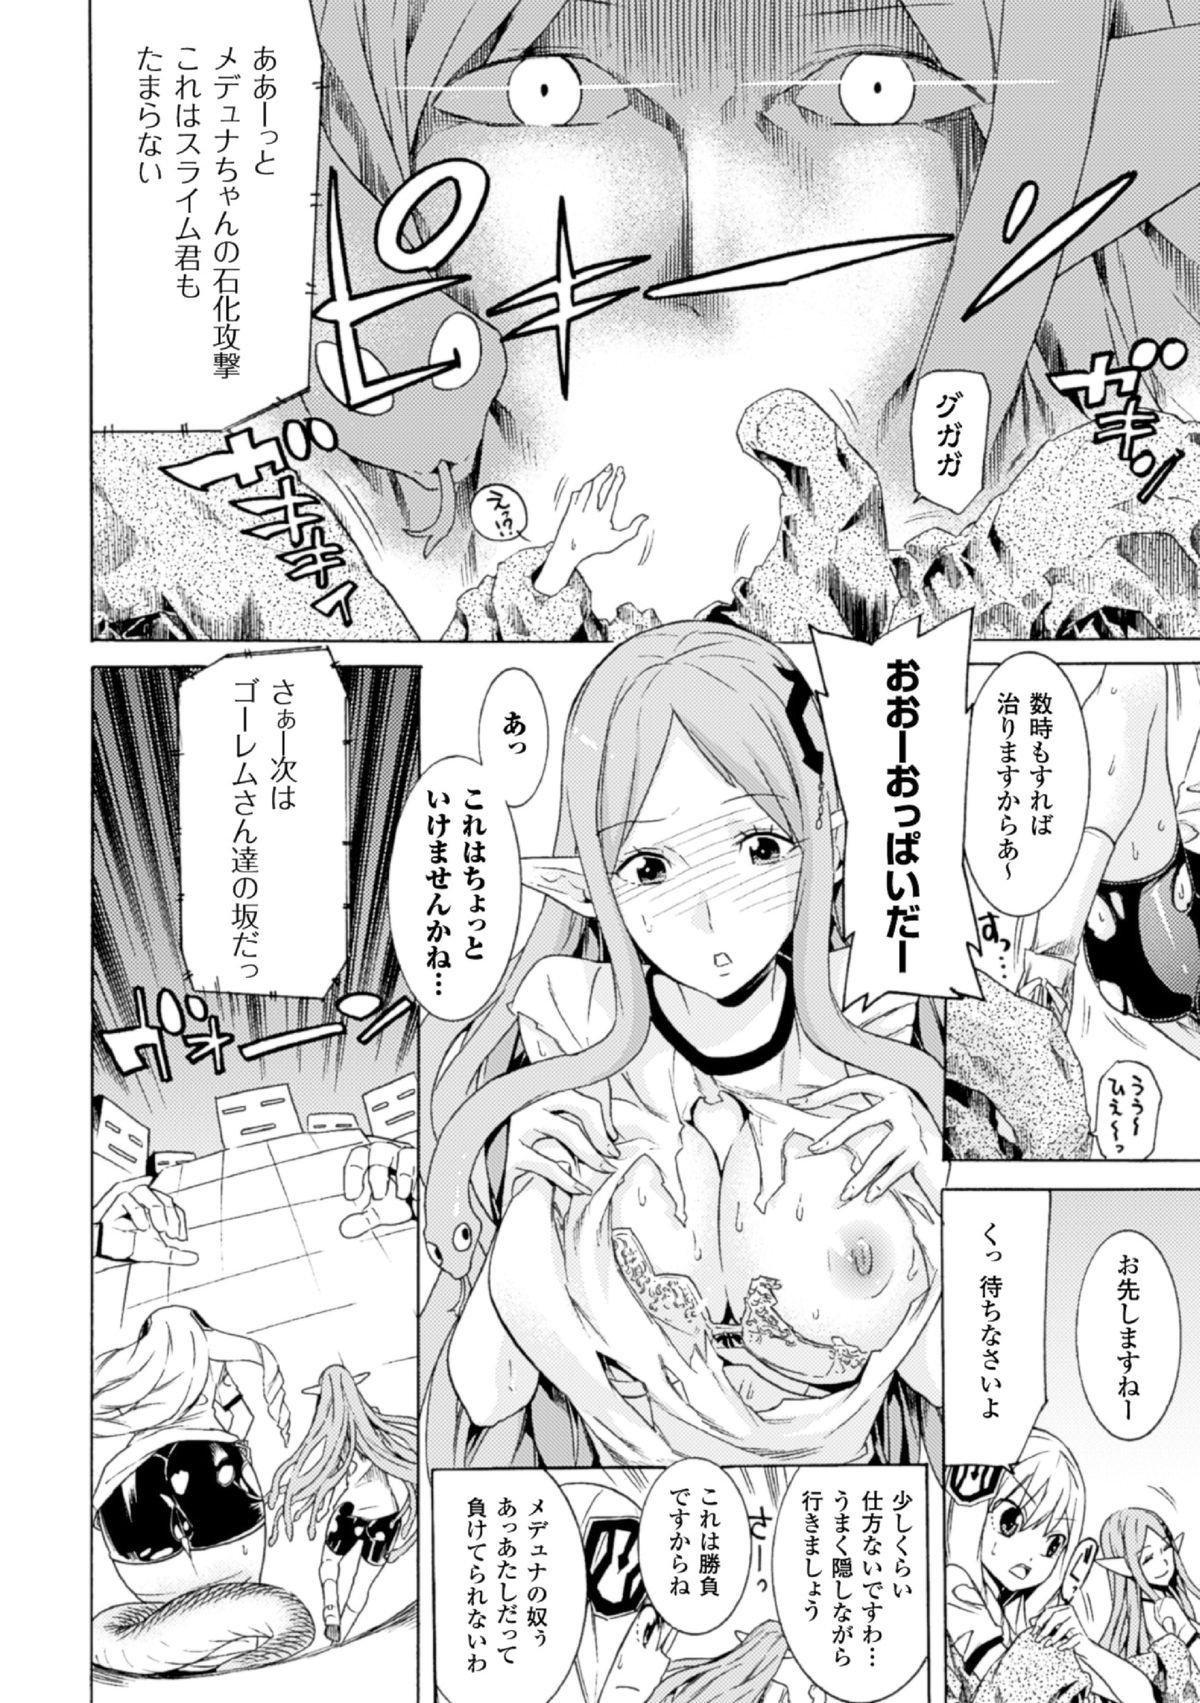 Kashima 2D Comic Magazine - Monster Musume ga Tsudou Ishuzoku Gakuen e Youkoso! Vol. 2 Nalgas - Page 12